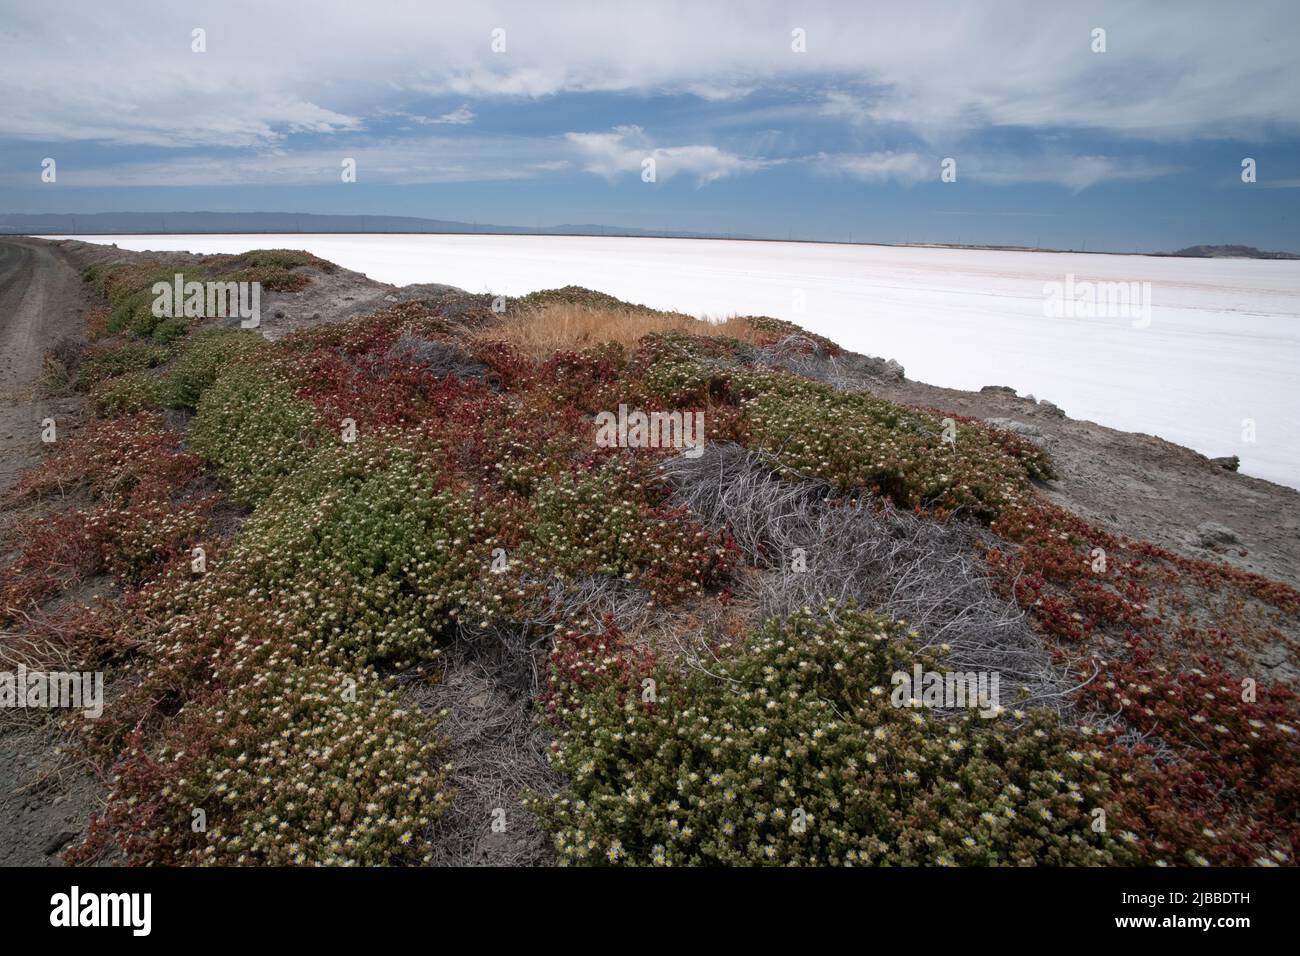 Slender Iceplant (Mesembryanthemum nodiflorum) an invasive species, growing in a coastal region. Stock Photo